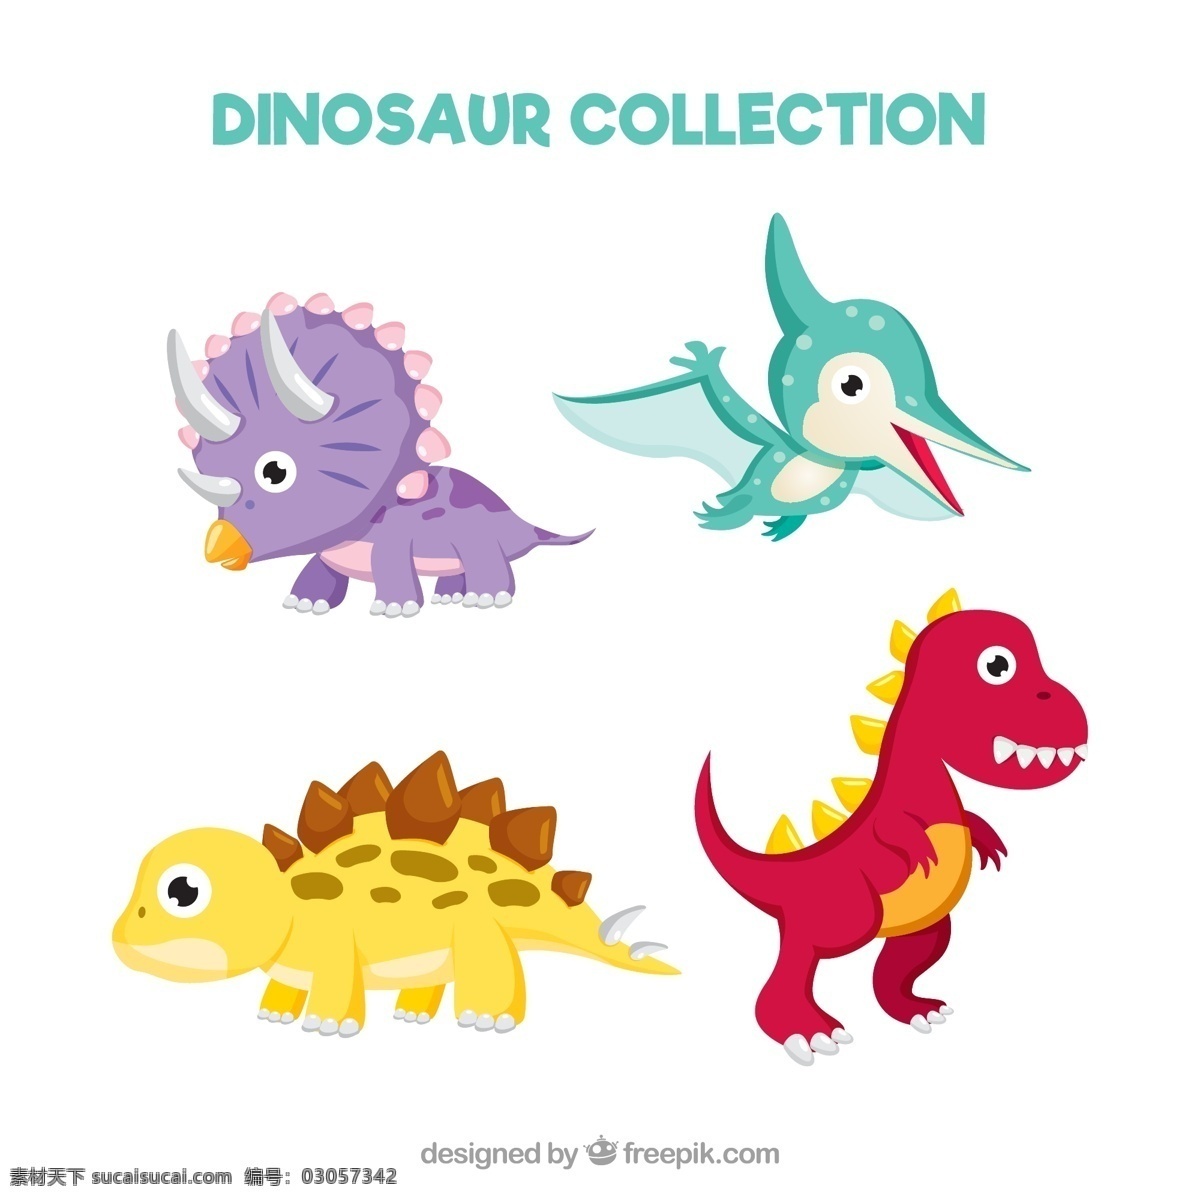 小恐龙 婴儿 手 自然 动物 卡通 绘制 可爱 怪兽 恐龙 可爱的 卡通动物 取材 游戏 设置 蜥蜴 尼斯野生动物